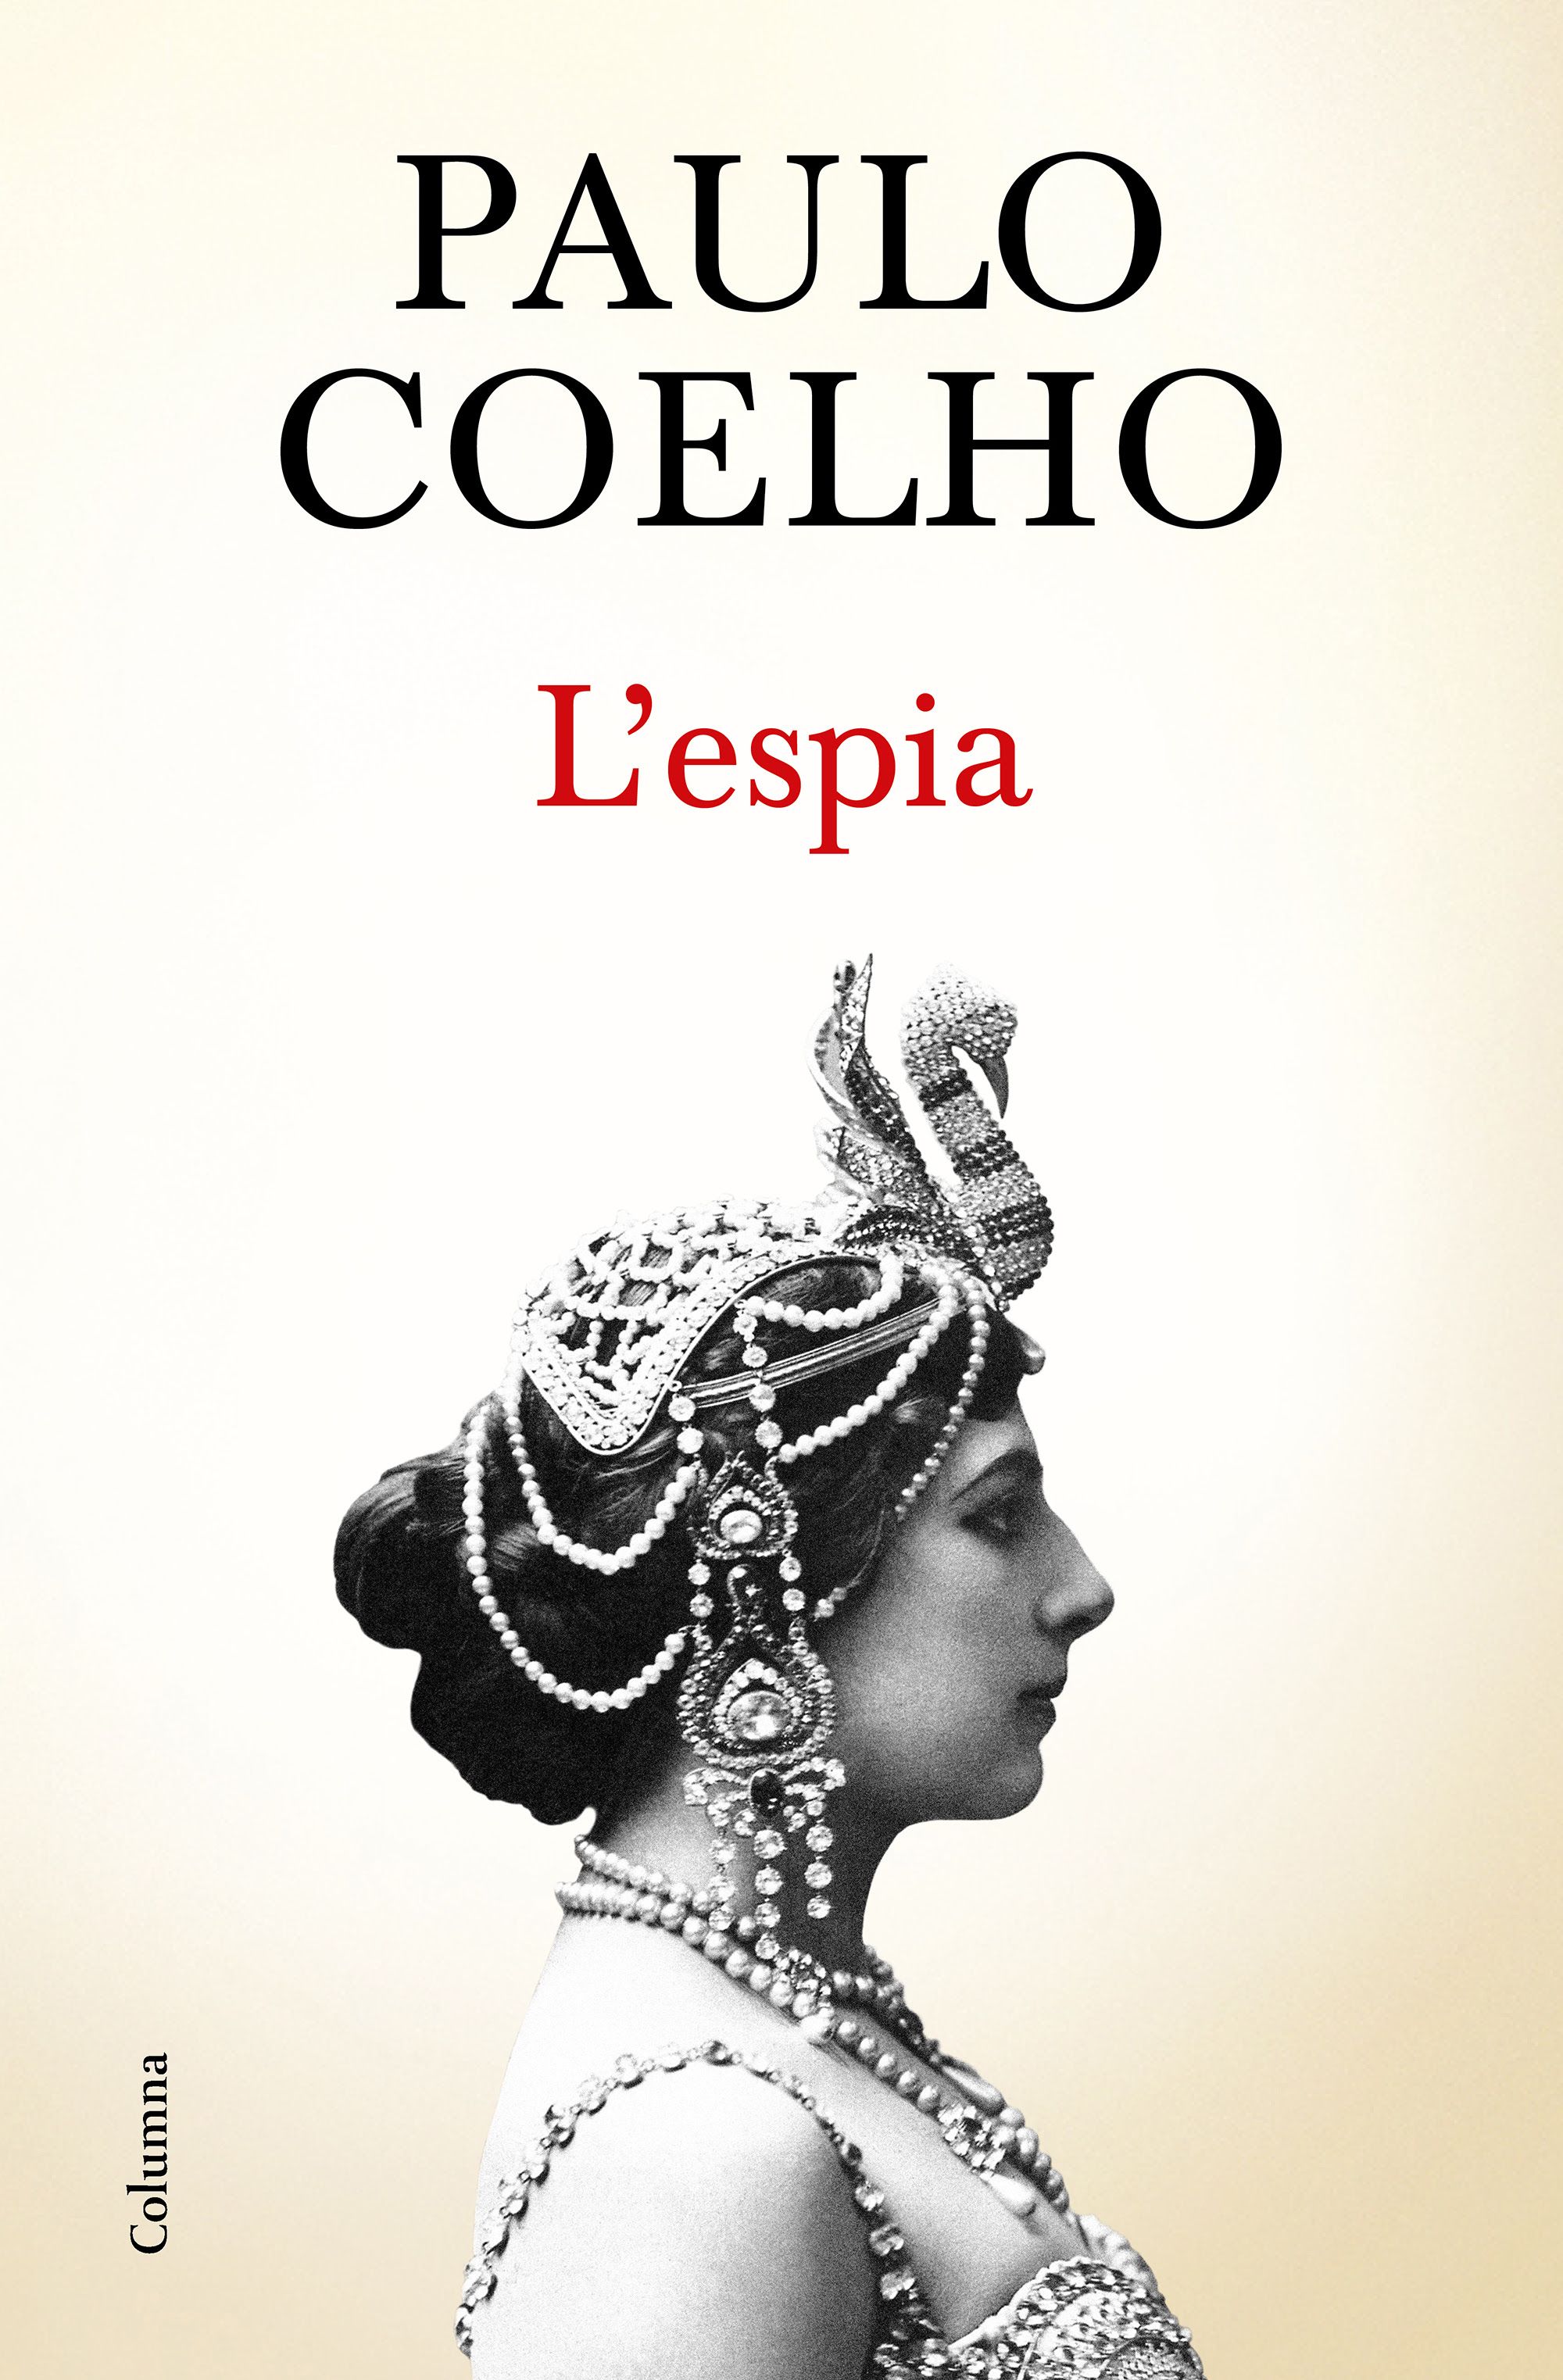 Paulo Coelho vuelve con una nueva novela sobre Mata Hari